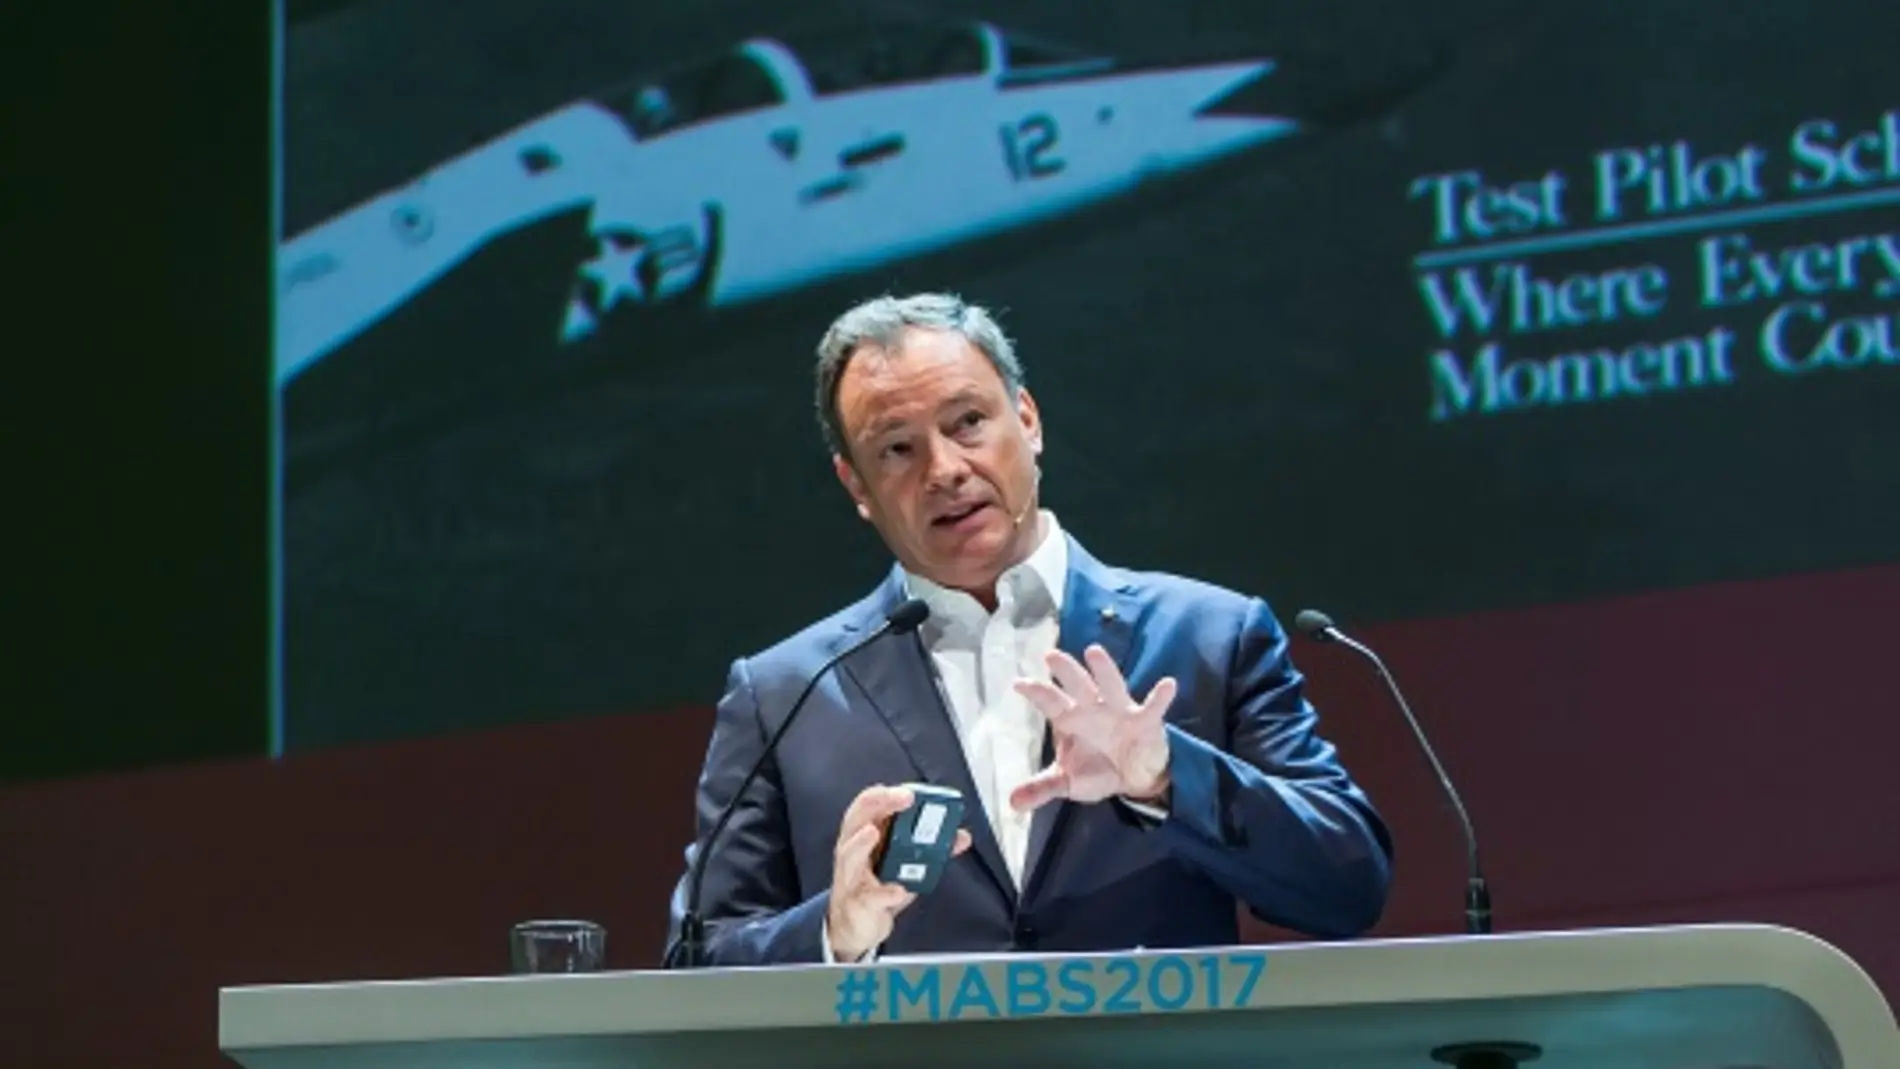 El astronauta Michael López-Alegría, en el #MABS2017